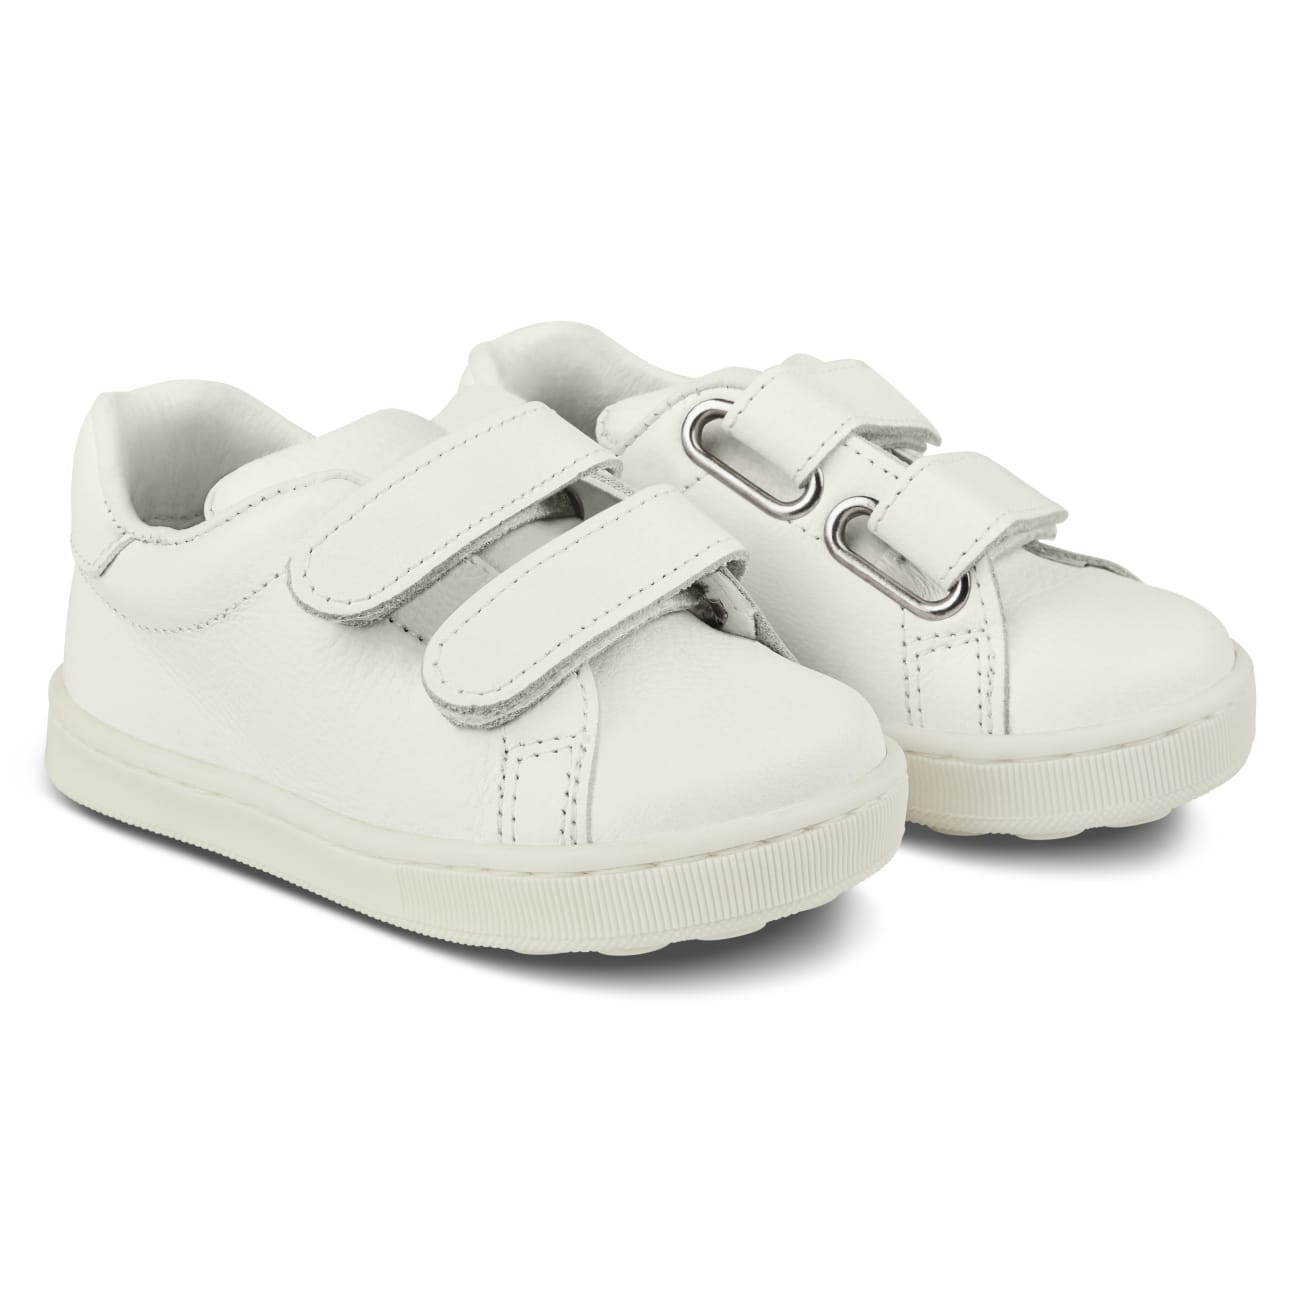 LaSchühchen Baby-Sneaker Weiß 20 – modischer und bequemer Schuh für Hallux valgus und empfindliche Füße von LaShoe.de